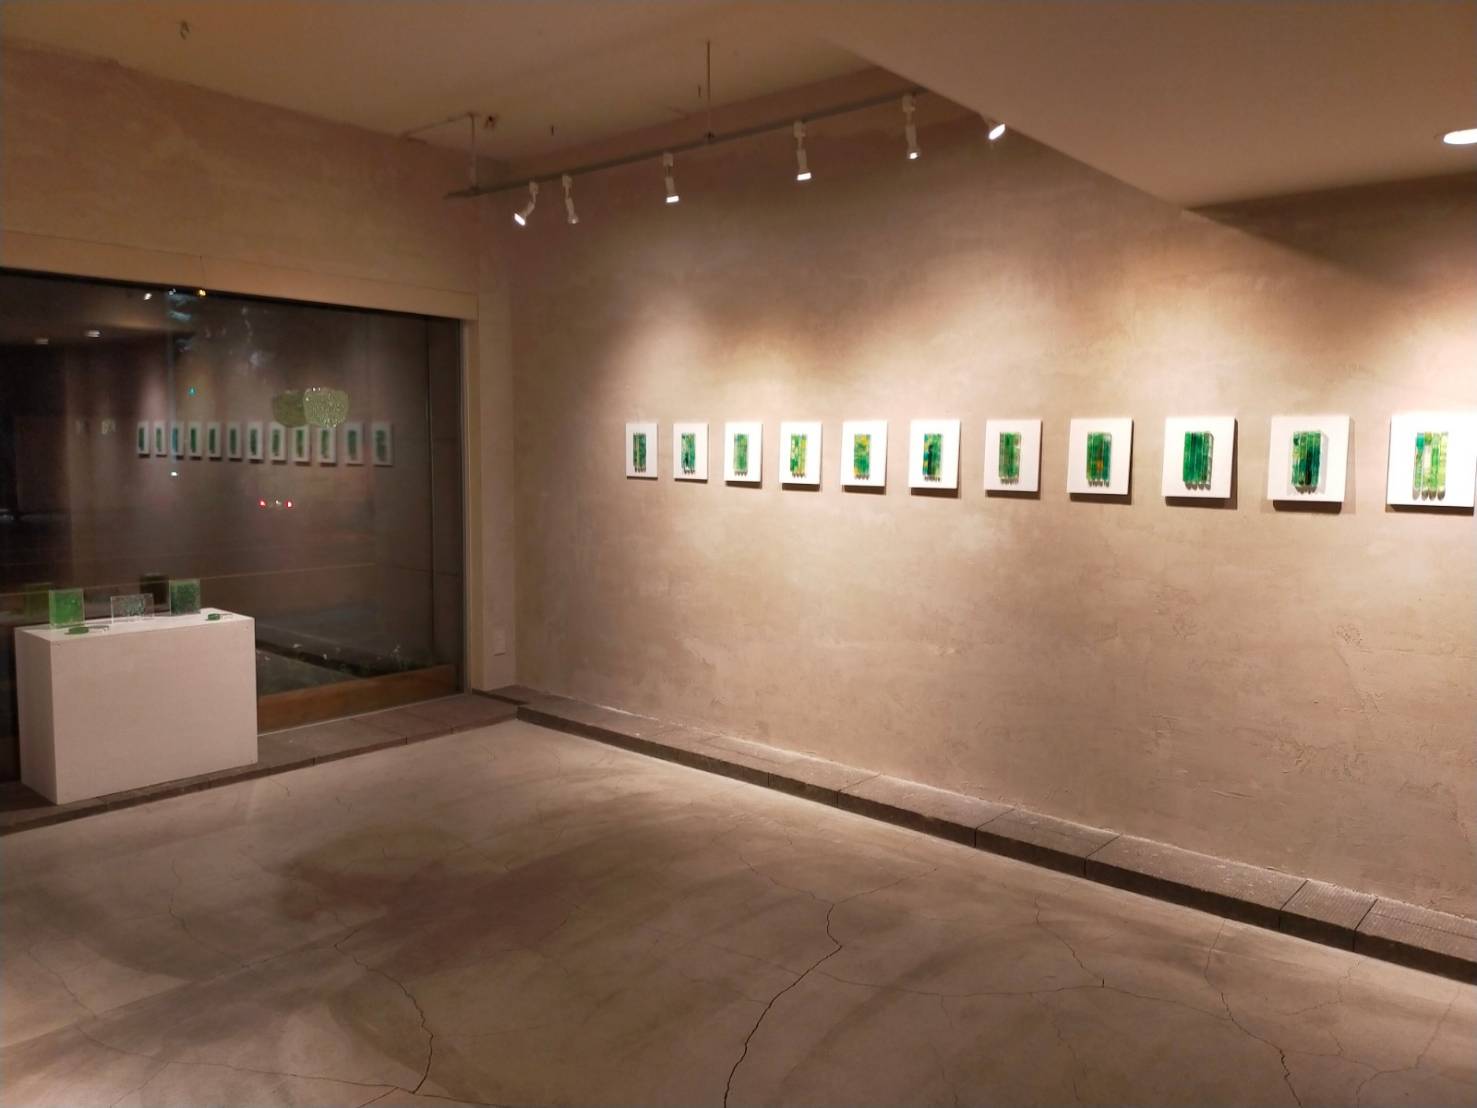 緑色の実験 2021 at to ov cafe / gallery 田村陽子個展